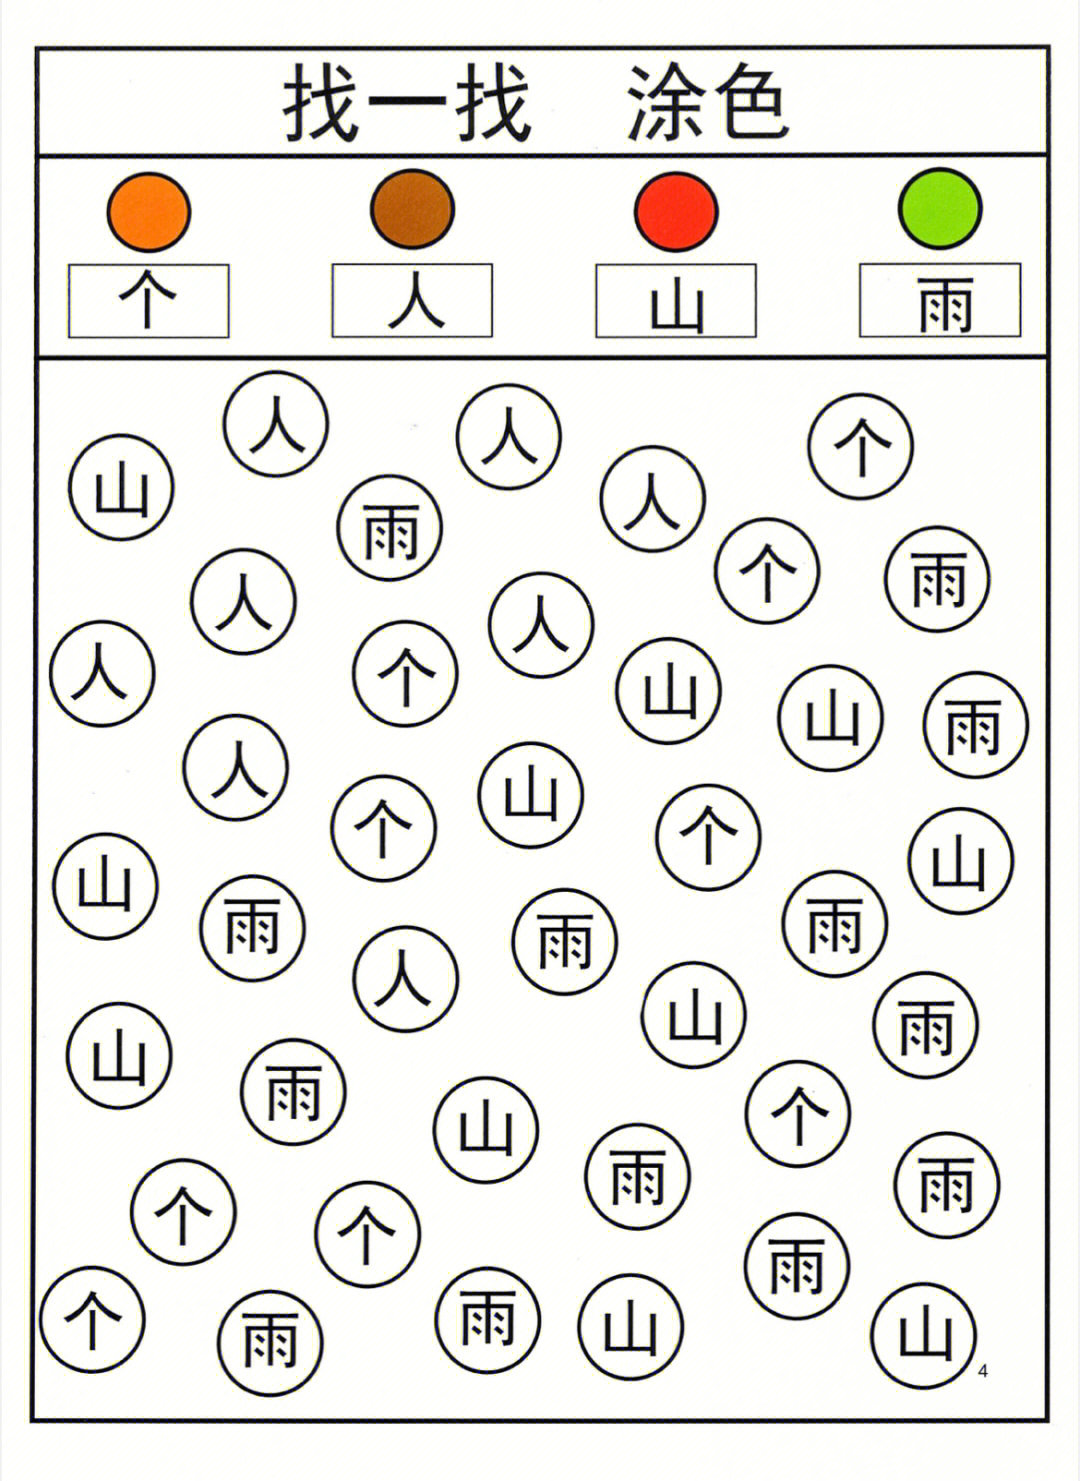 识字学习,重在有趣,这本汉字书里包括了各种游戏学习识字的方法,涂色